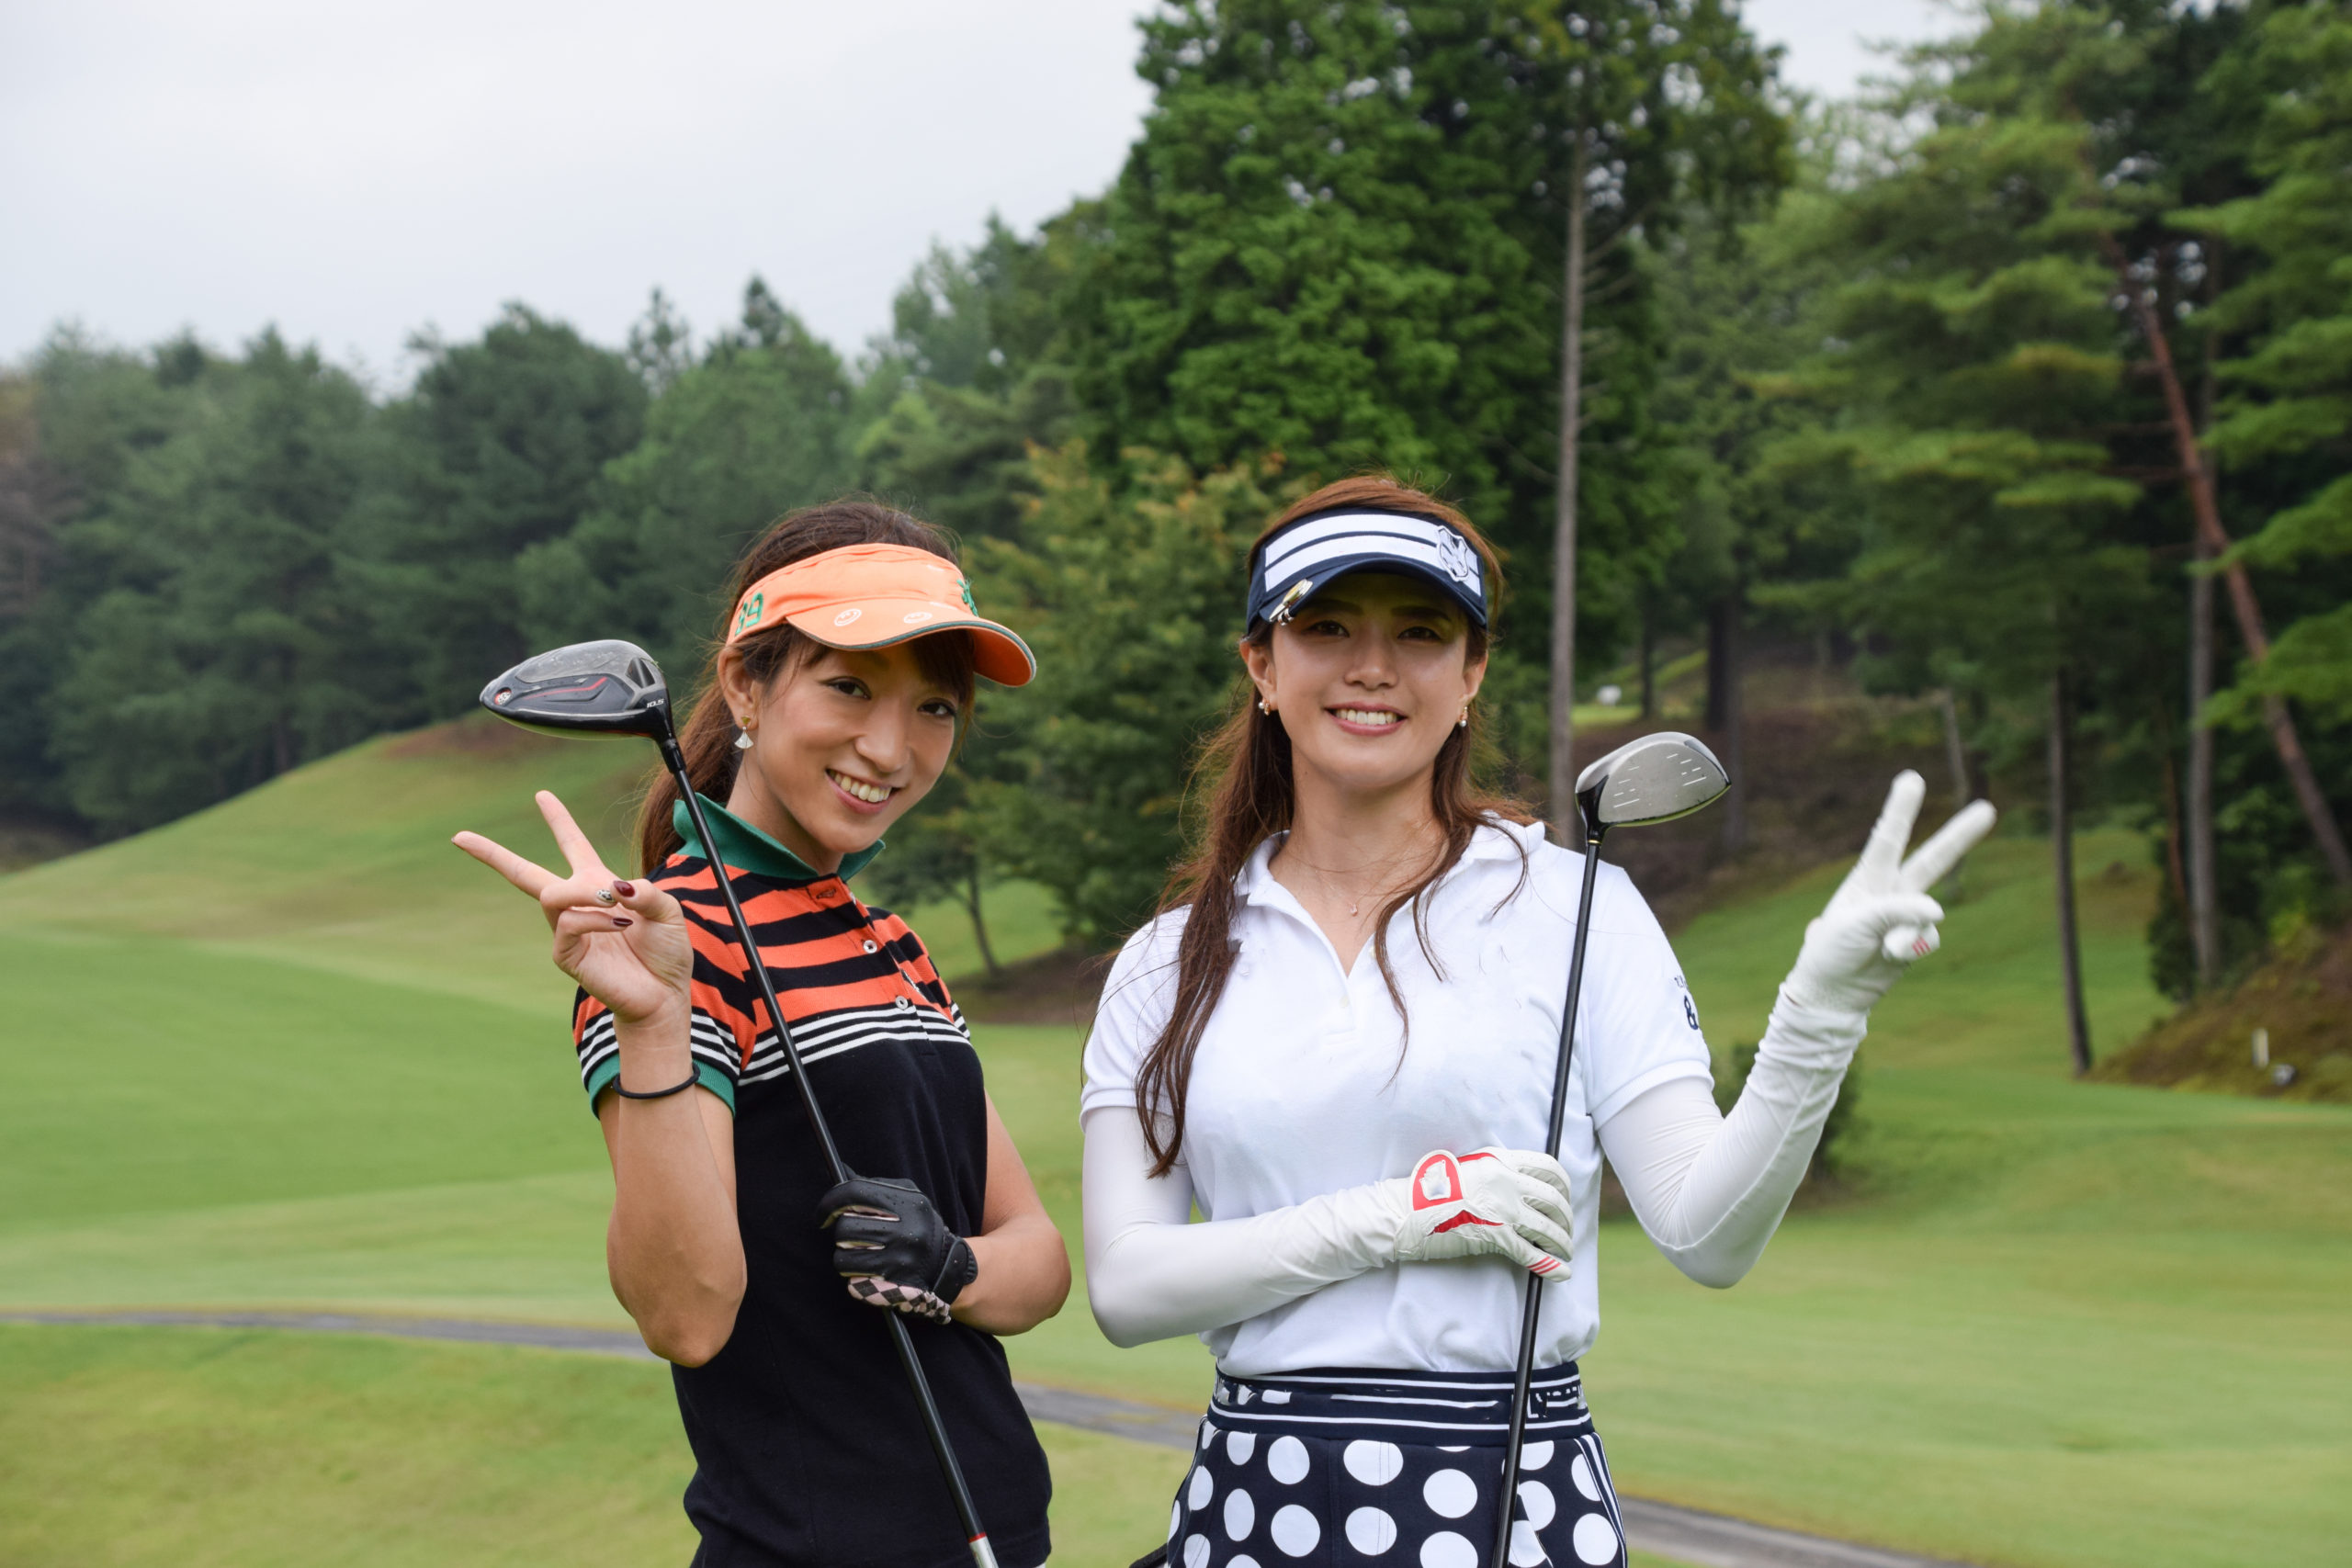 ゴルフをしている2人の女性